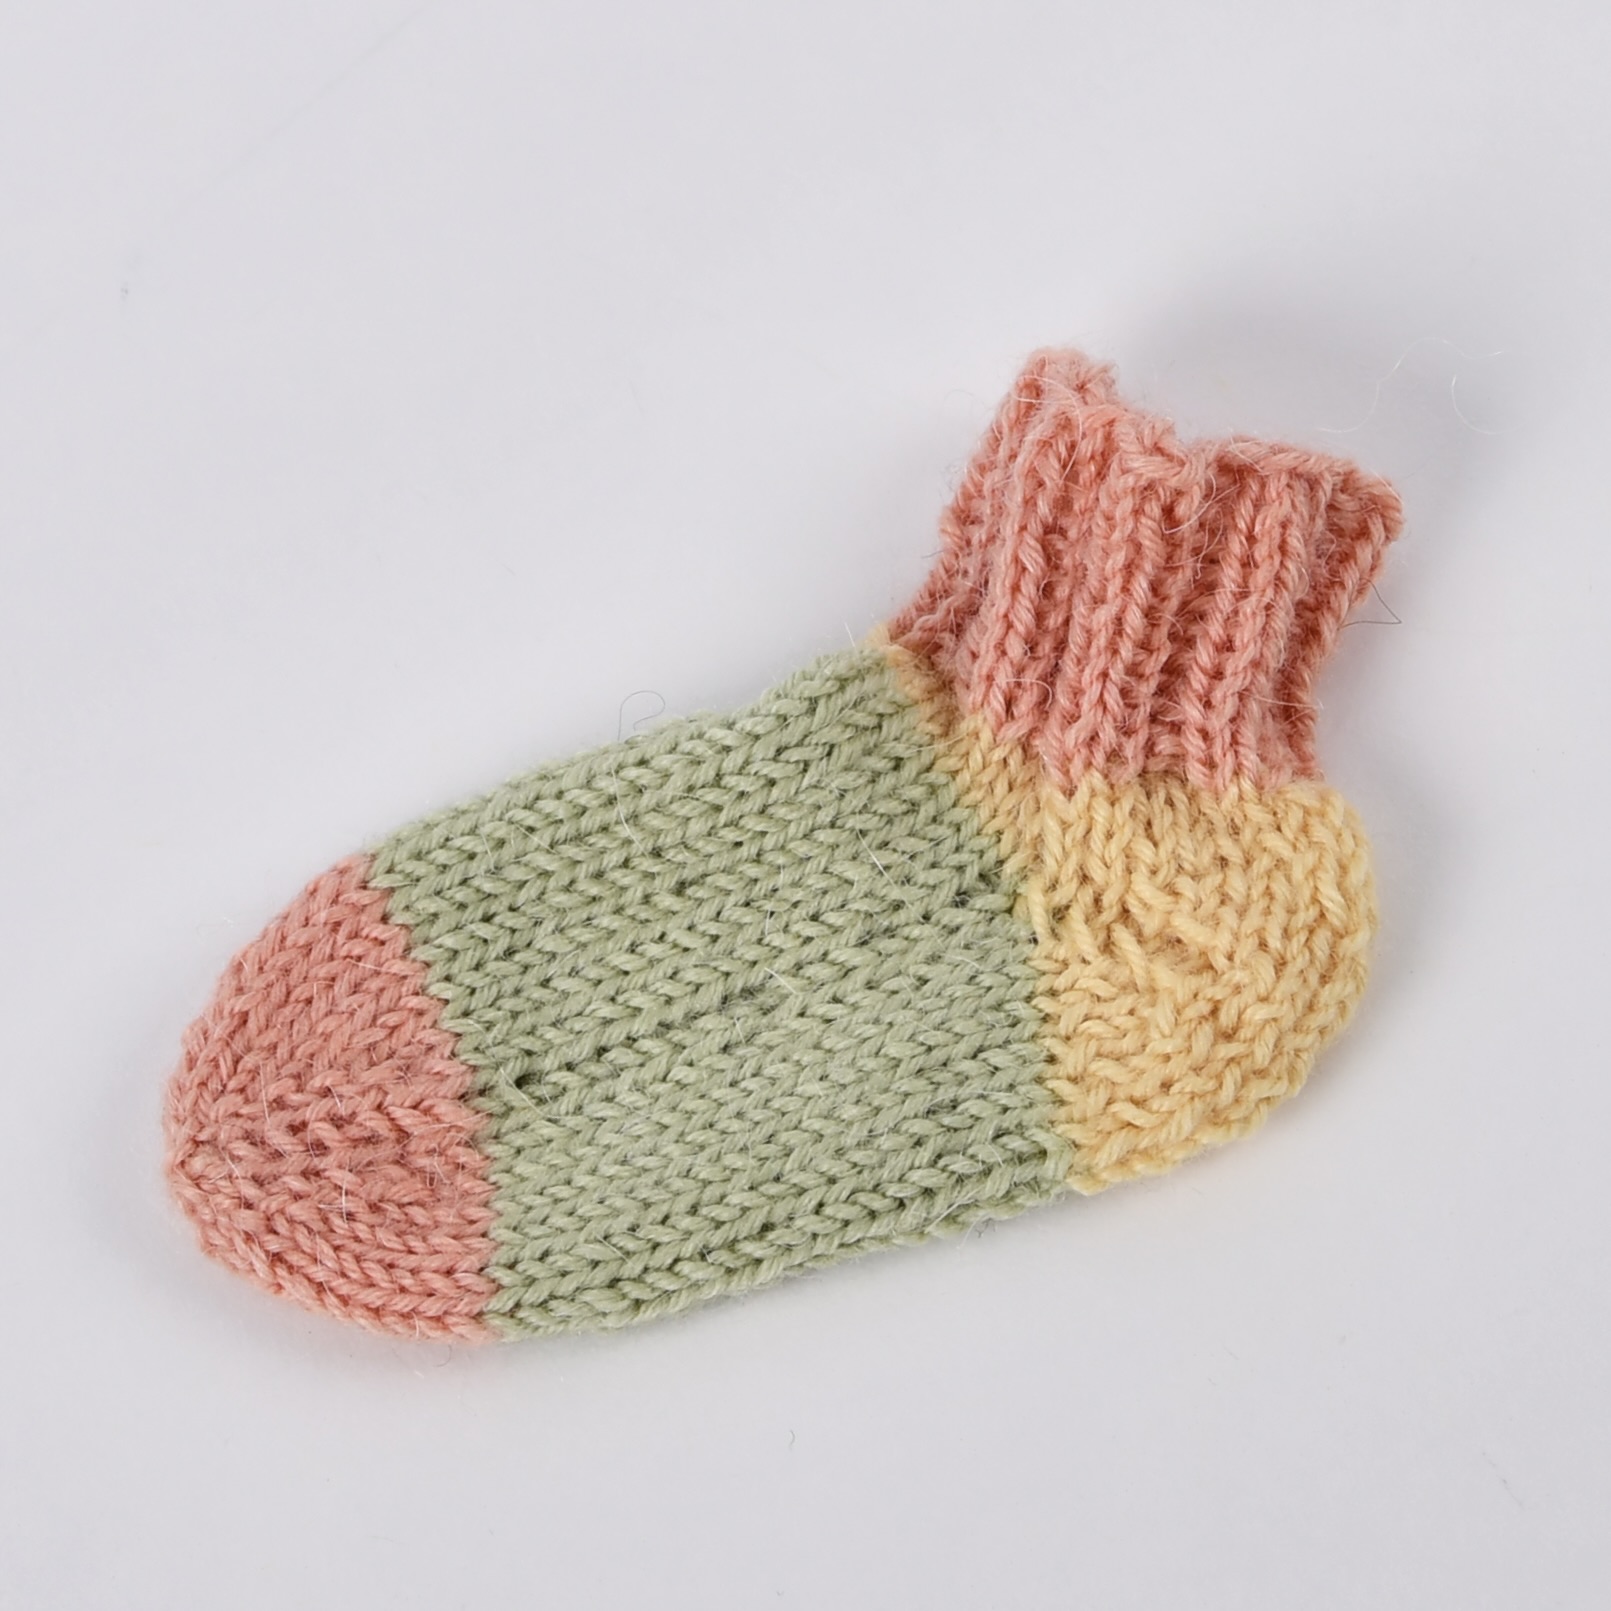 1. Socken stricken - Freitag nachmittags - Von der Spitze bis zum Bund 